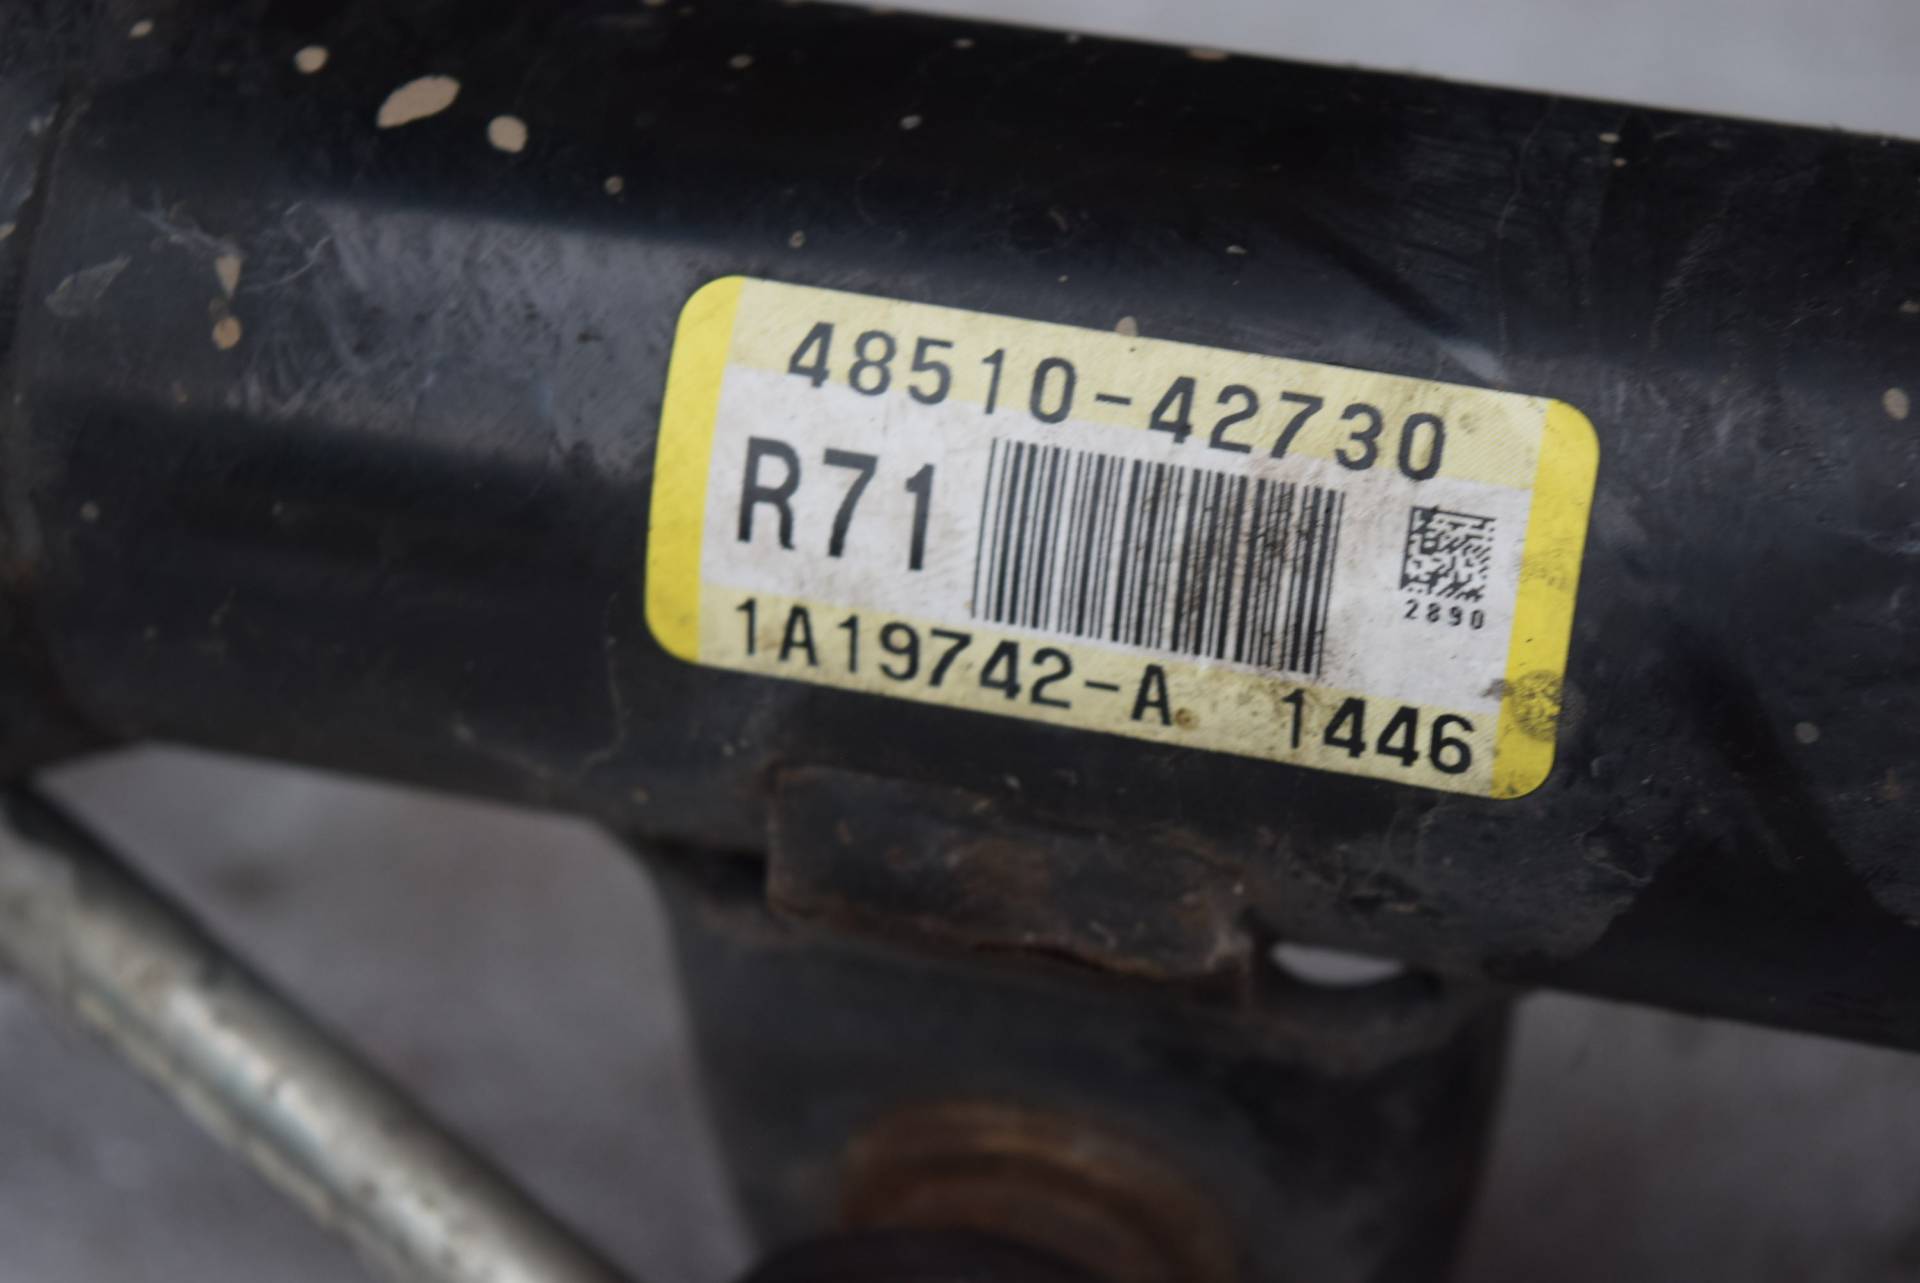 Амортизатор передний правый к Toyota RAV4 4851042730, 2020, купить | DT-83-16-68-1. Фото #3